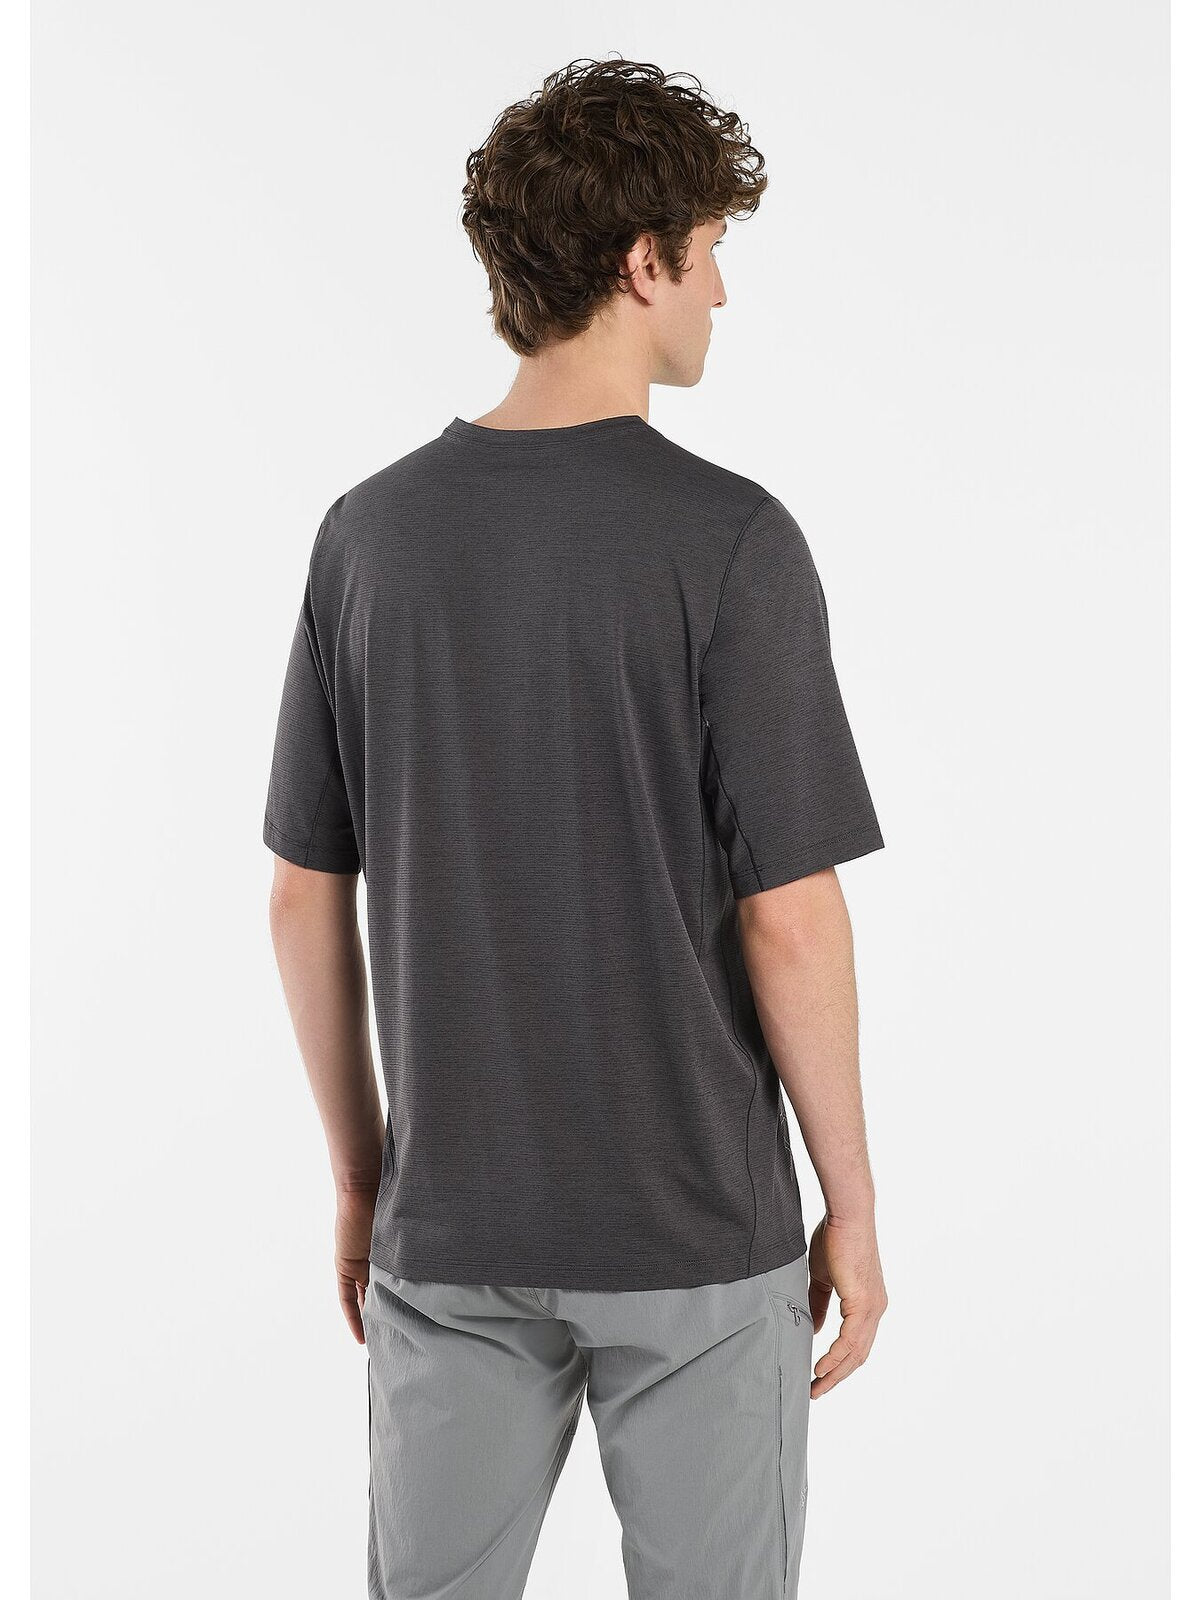 Cormac Downword Short Sleeve Shirt for Men